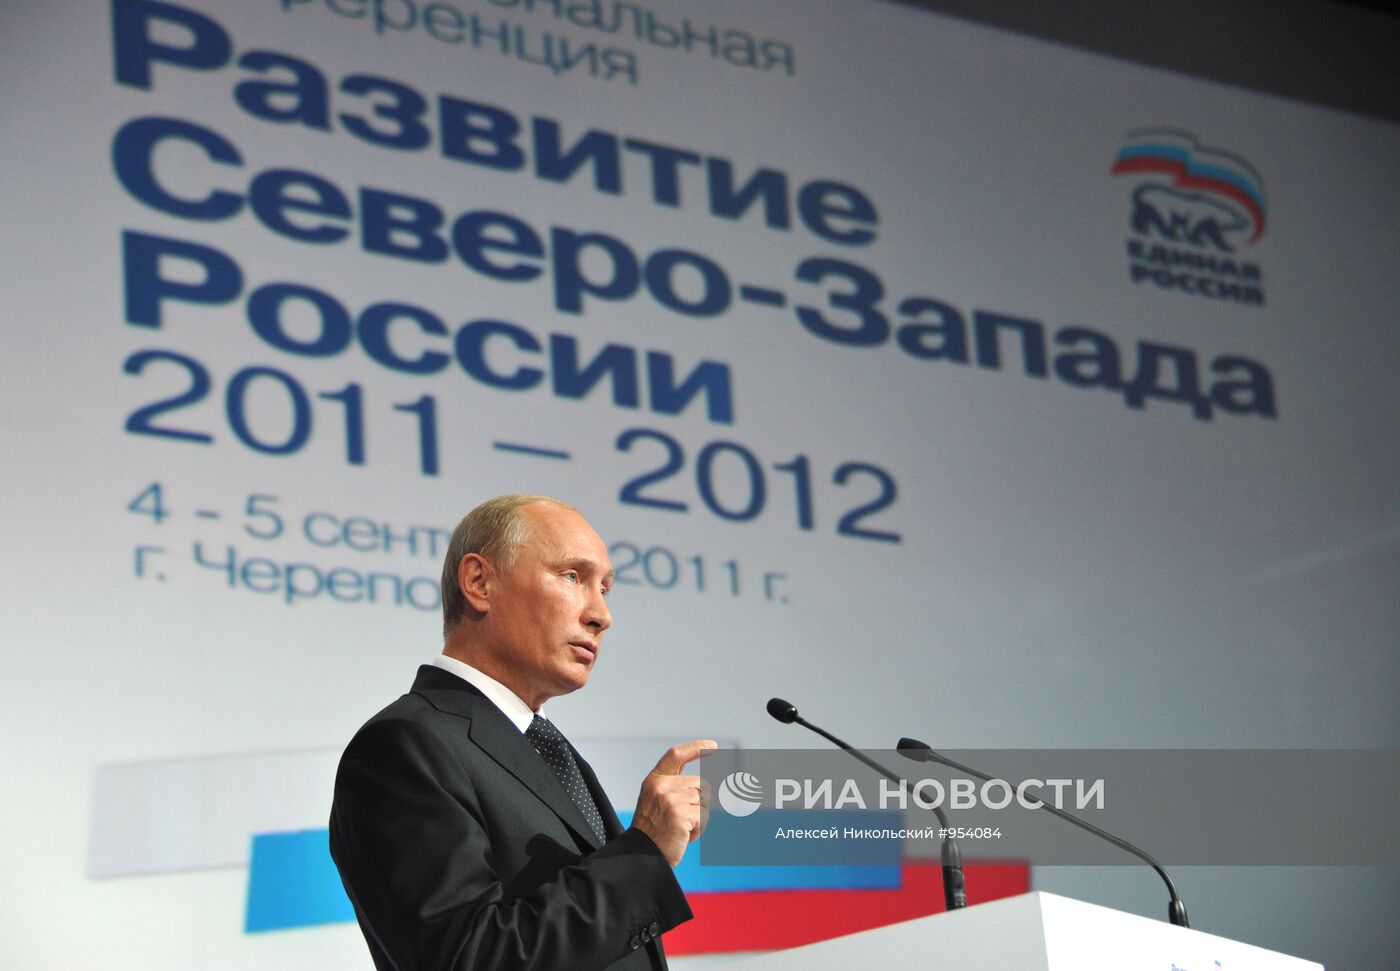 Рабочая поездка В.Путина в СЗФО